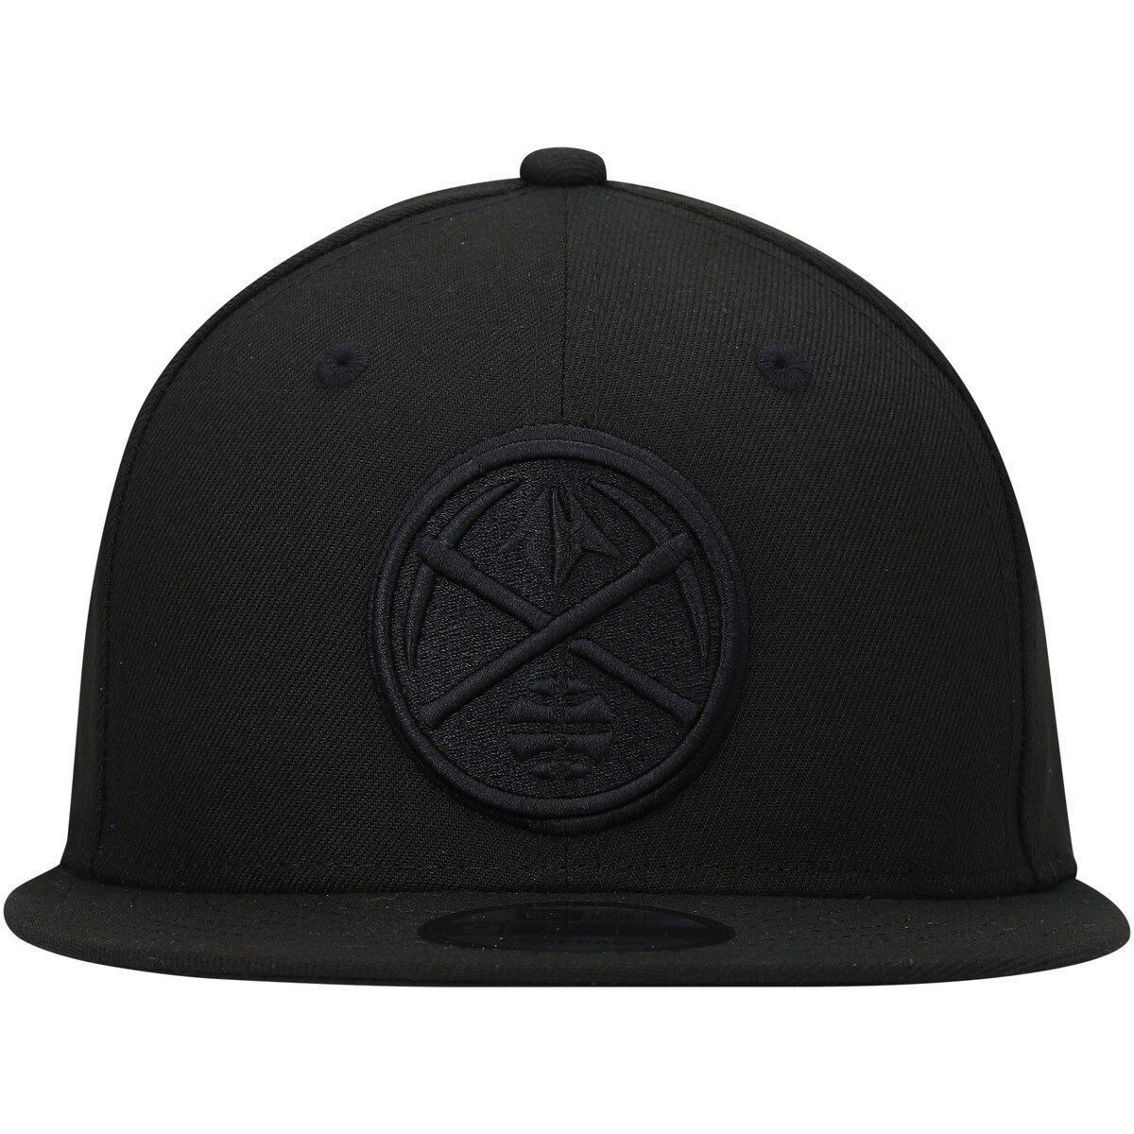 New Era Men's Denver Nuggets Black On Black 9FIFTY Snapback Hat - Image 3 of 4